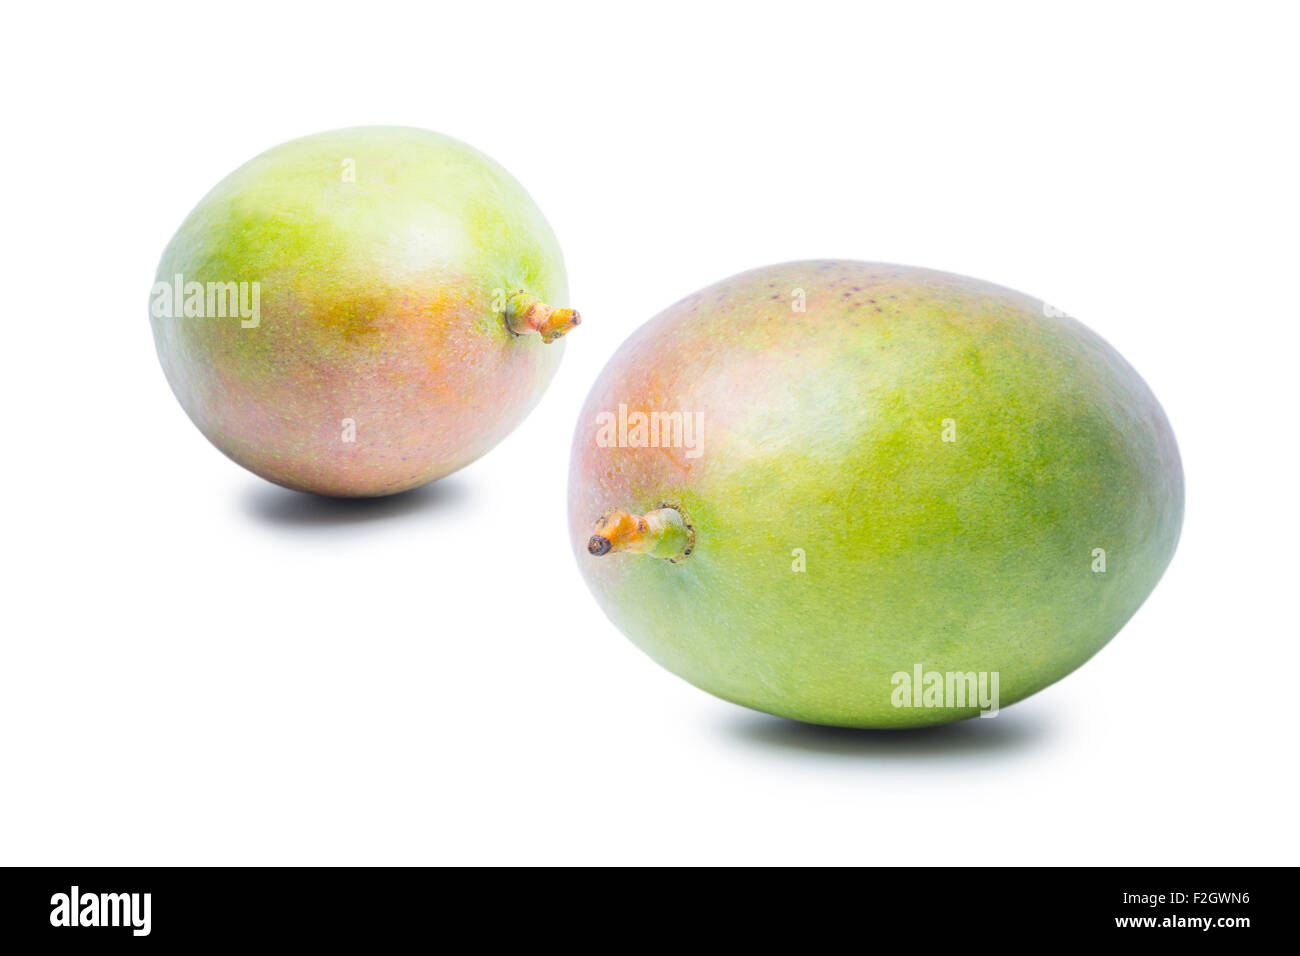 Two Mango fruits isolated on white background Stock Photo